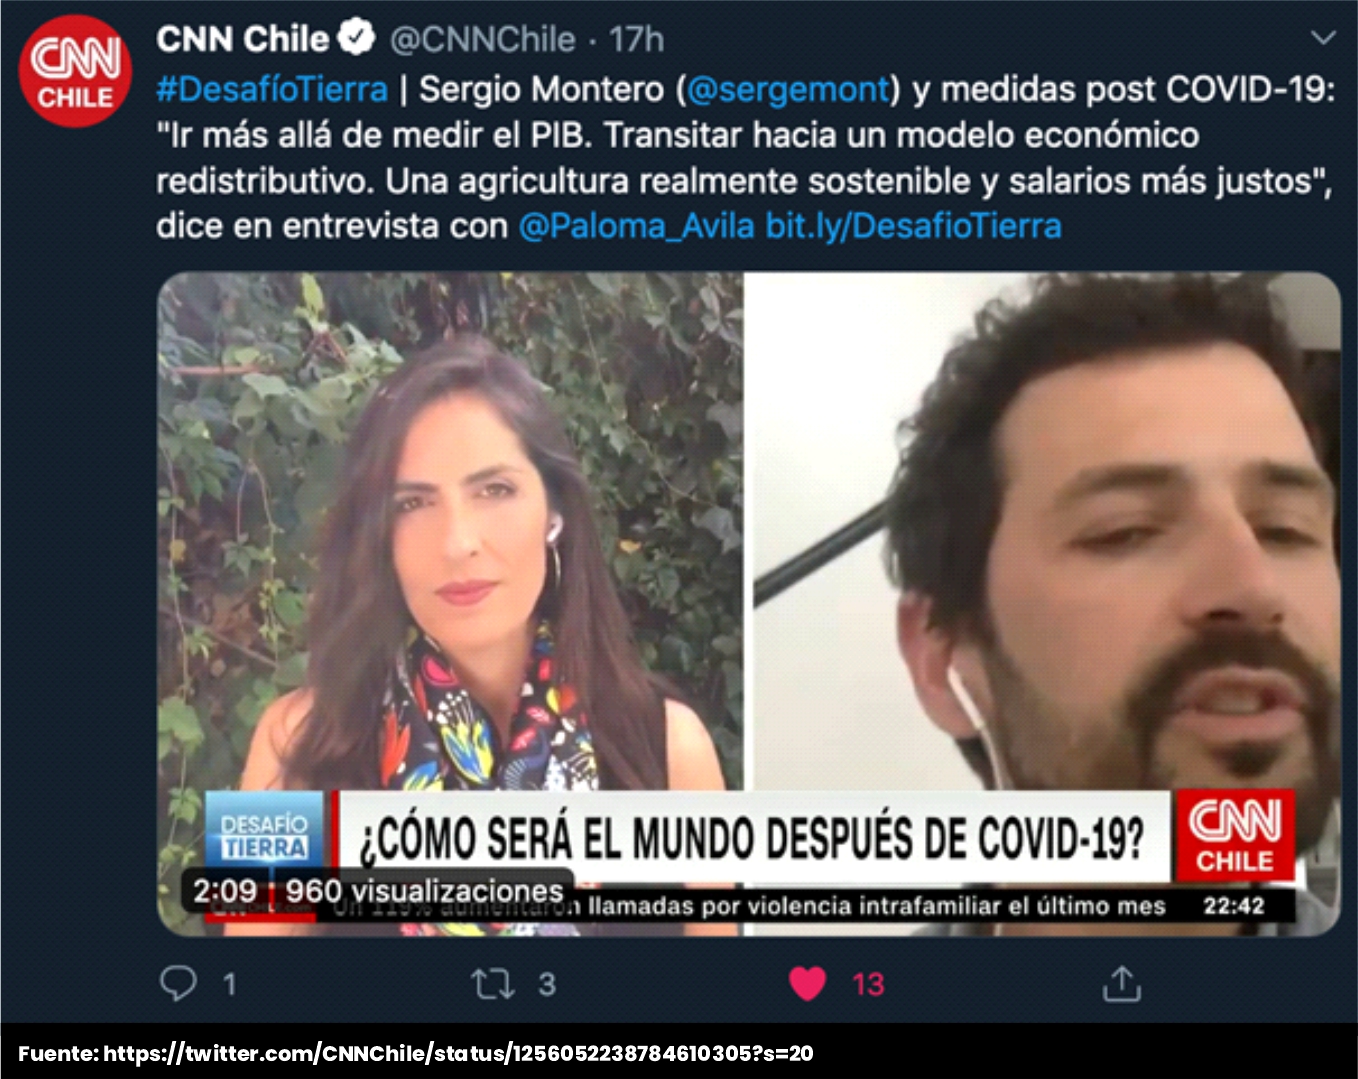 Sergio Montero en CNN Chile. Desafío tierra 2 - Cider | Uniandes